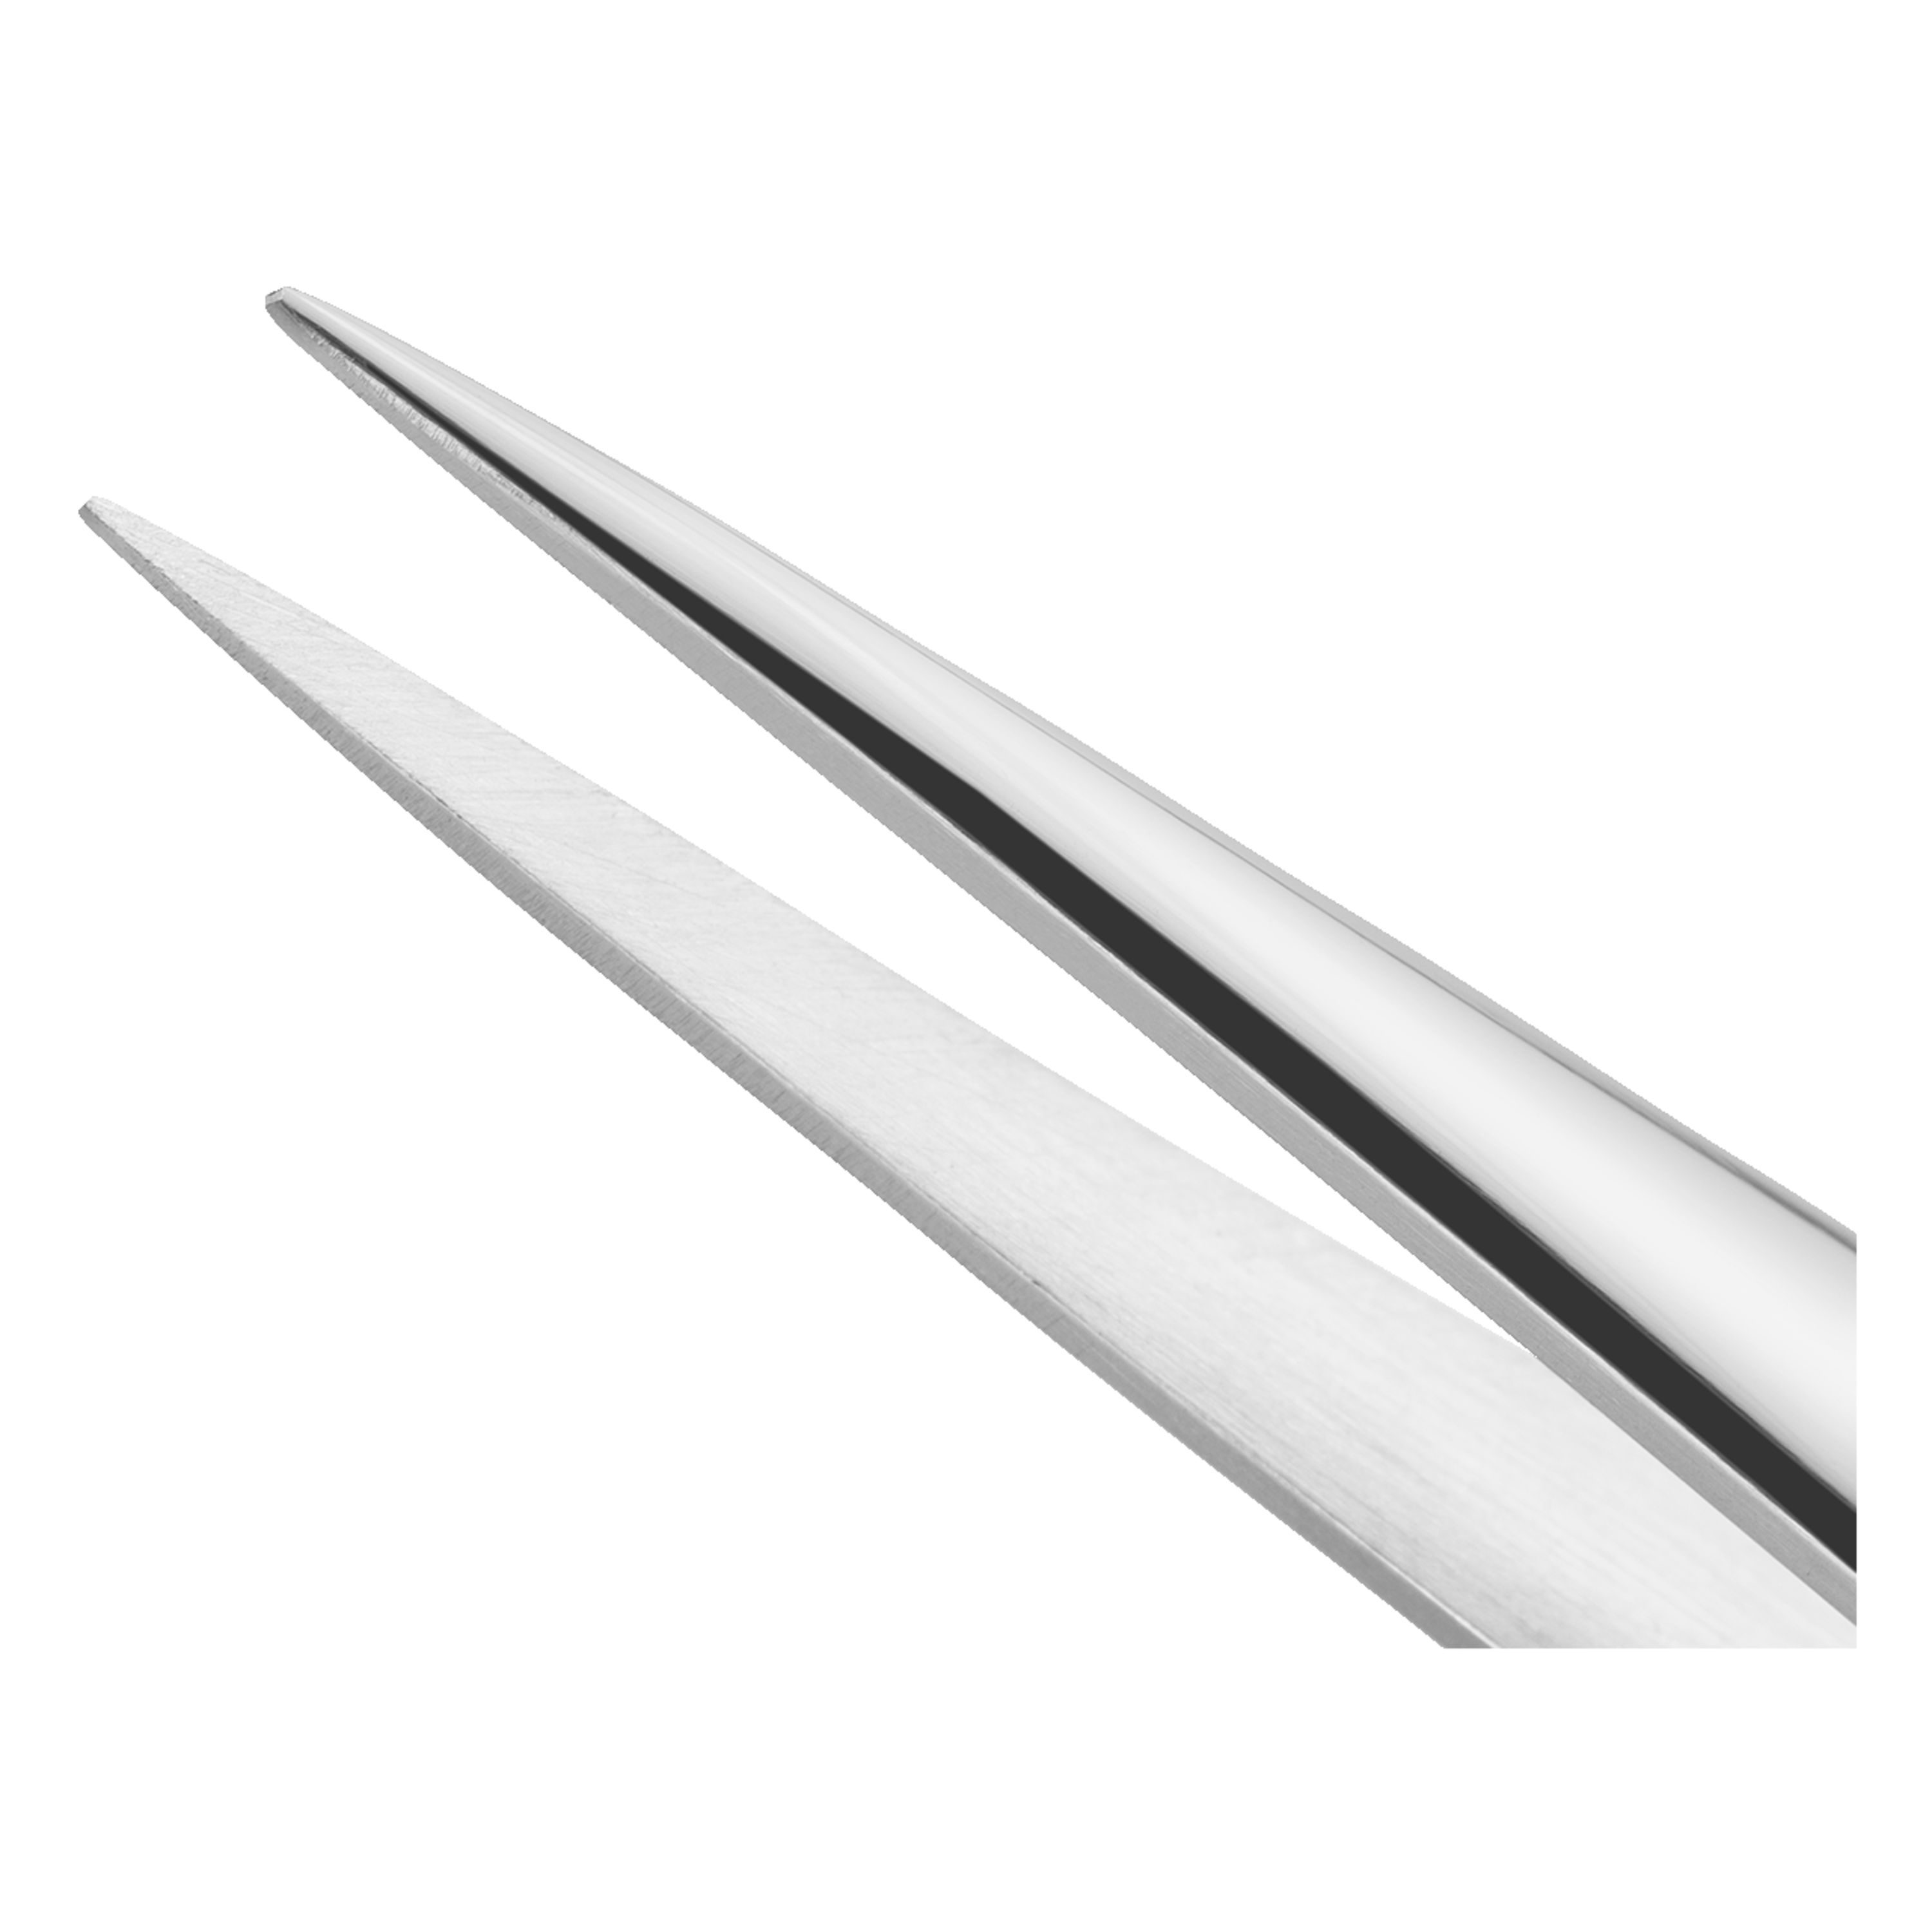 Slide Lock Pointed Tweezers – Excel Blades